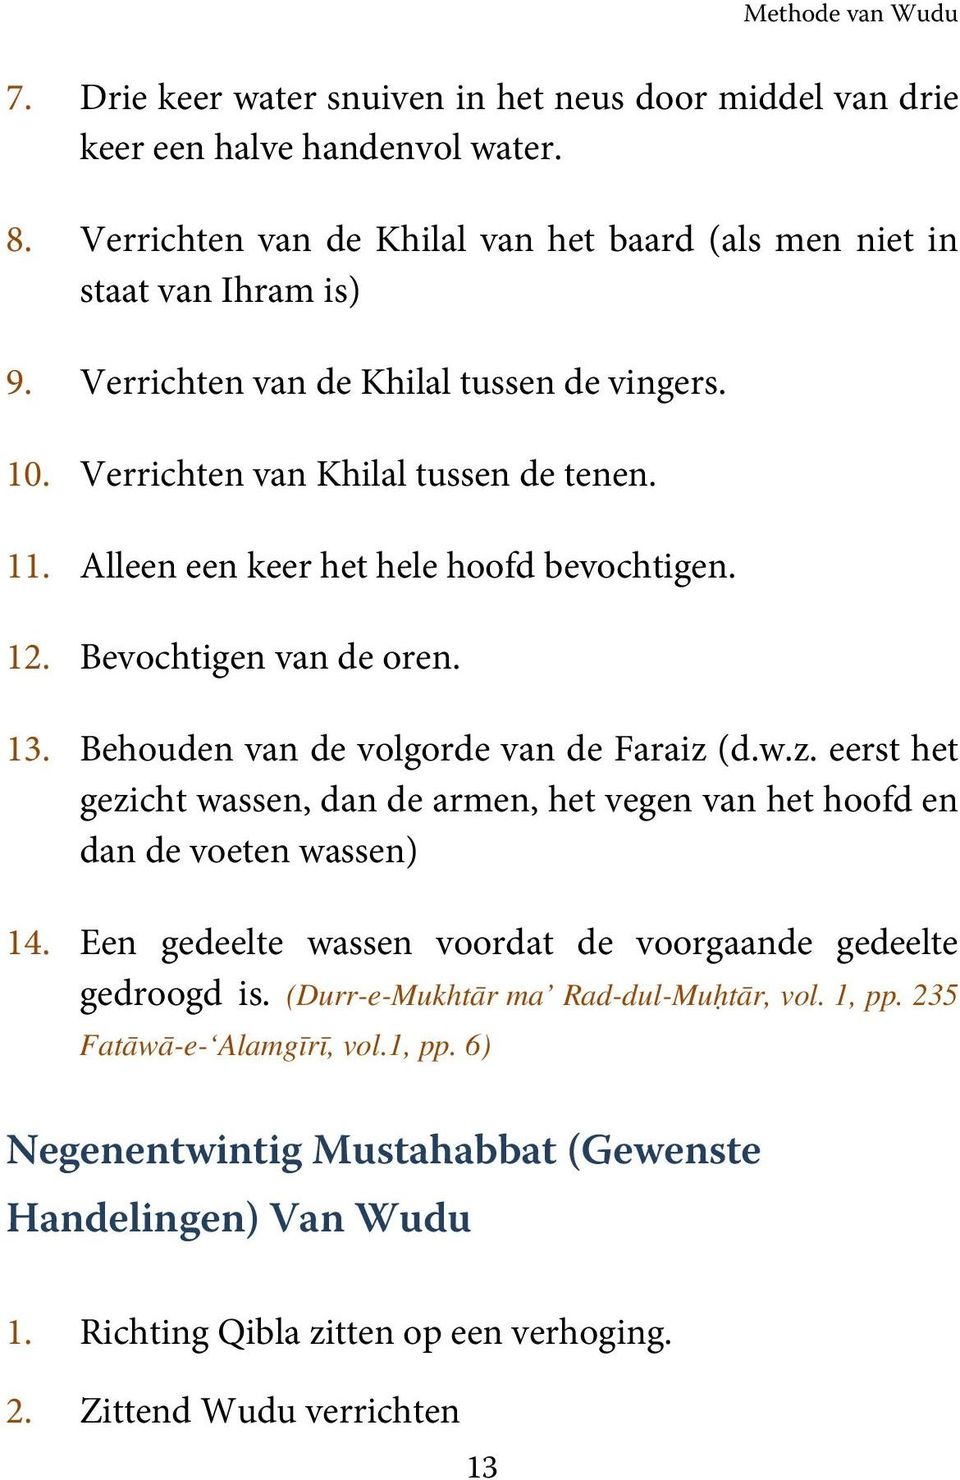 Methode van Wudu (Kleine Wassing Hanafi) - PDF Free Download